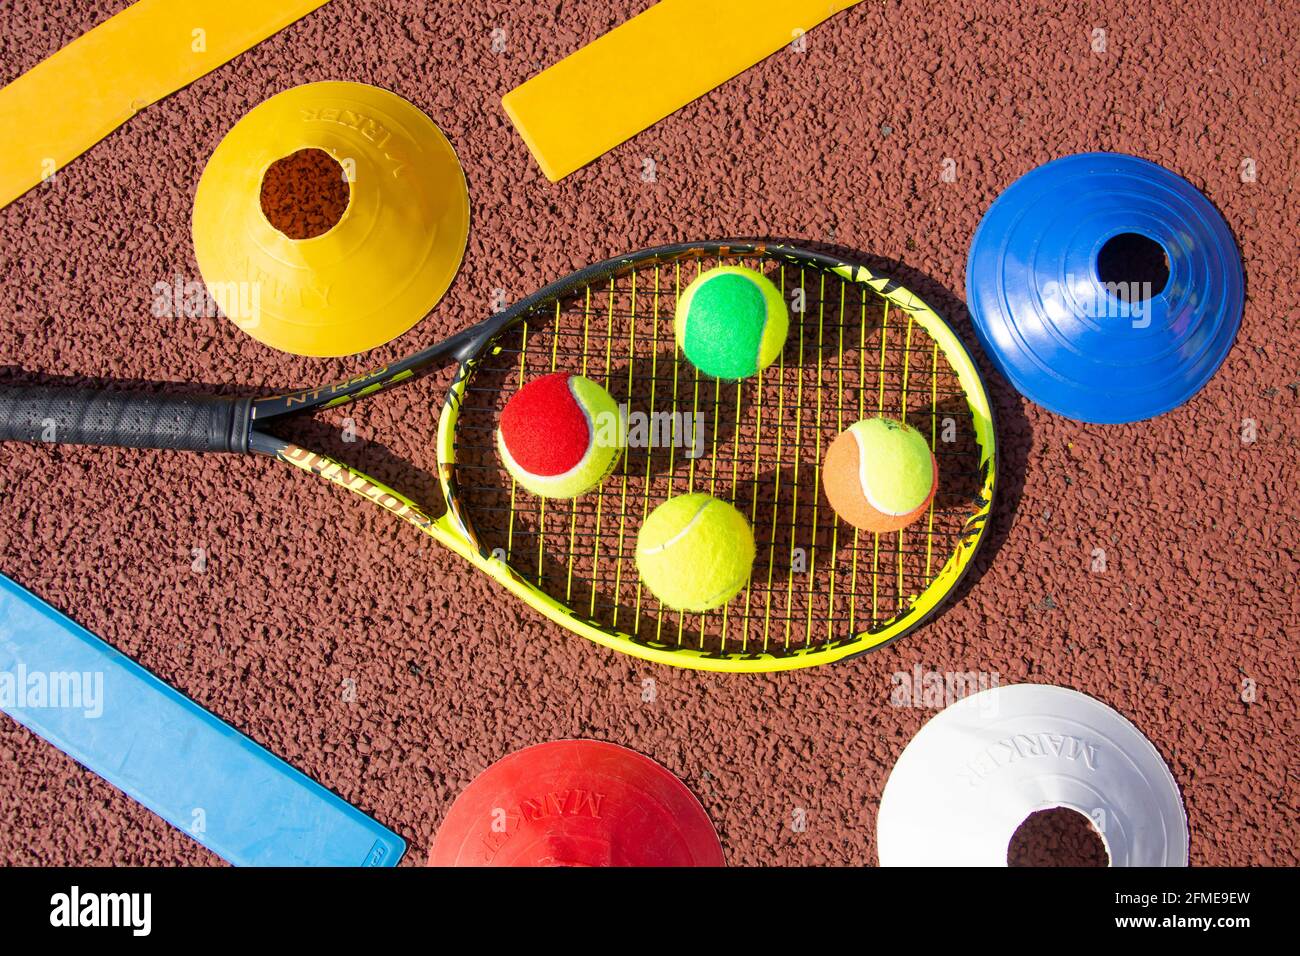 Sélection de balles de tennis rouges, vertes, orange et jaunes sur une raquette de tennis avec des étalages et des cônes, Surrey, Angleterre, Royaume-Uni Banque D'Images